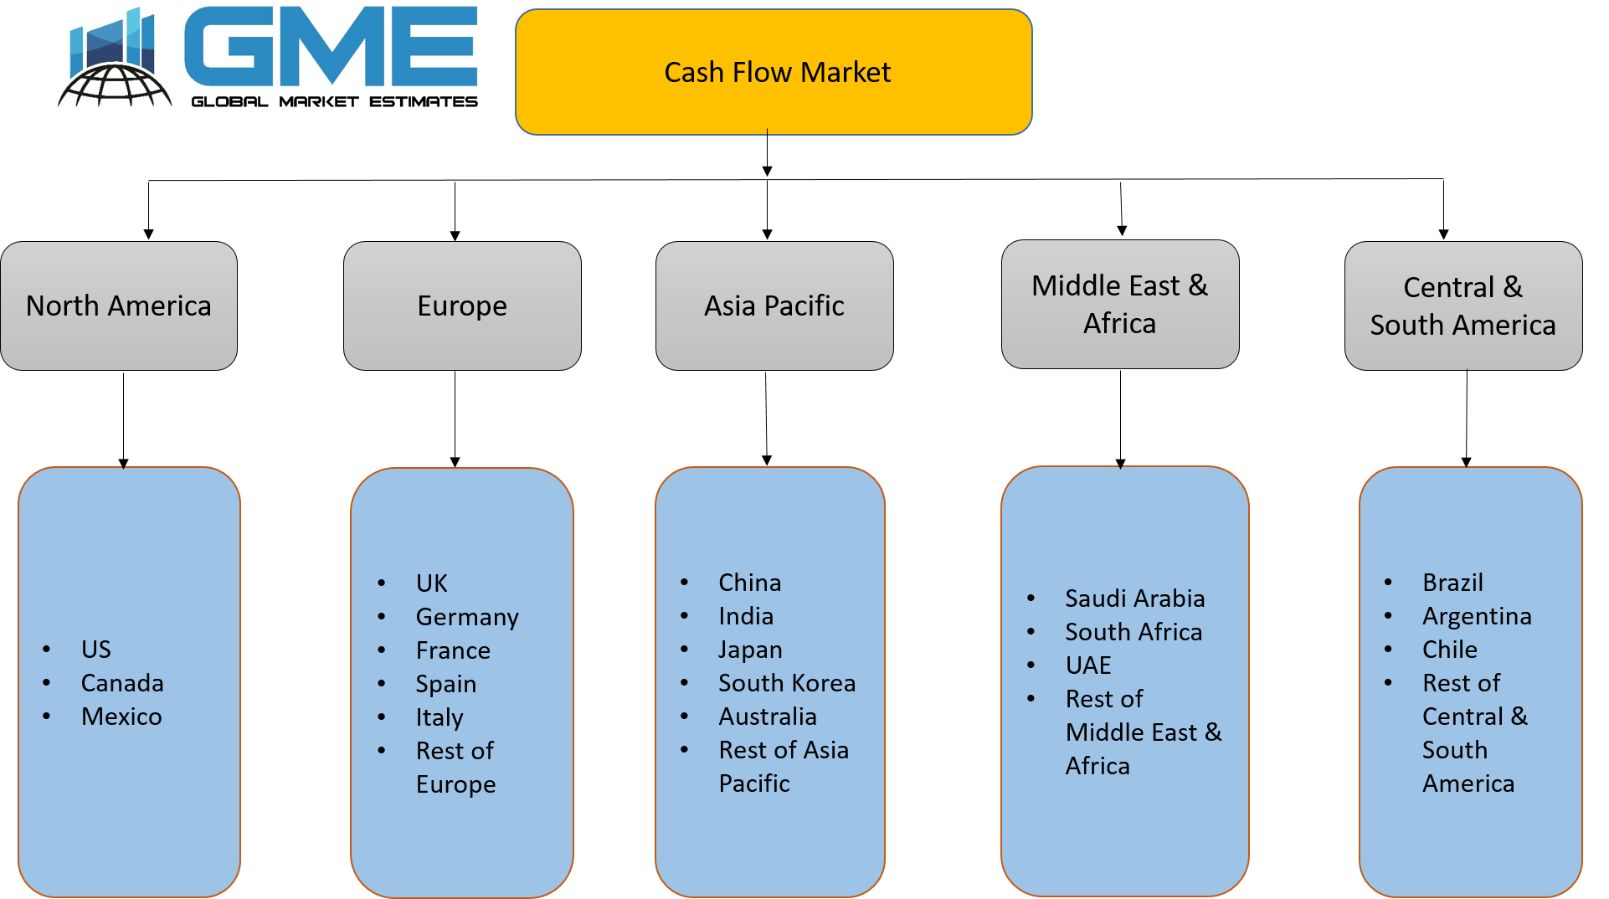 Cash Flow Market - Regional Analysis